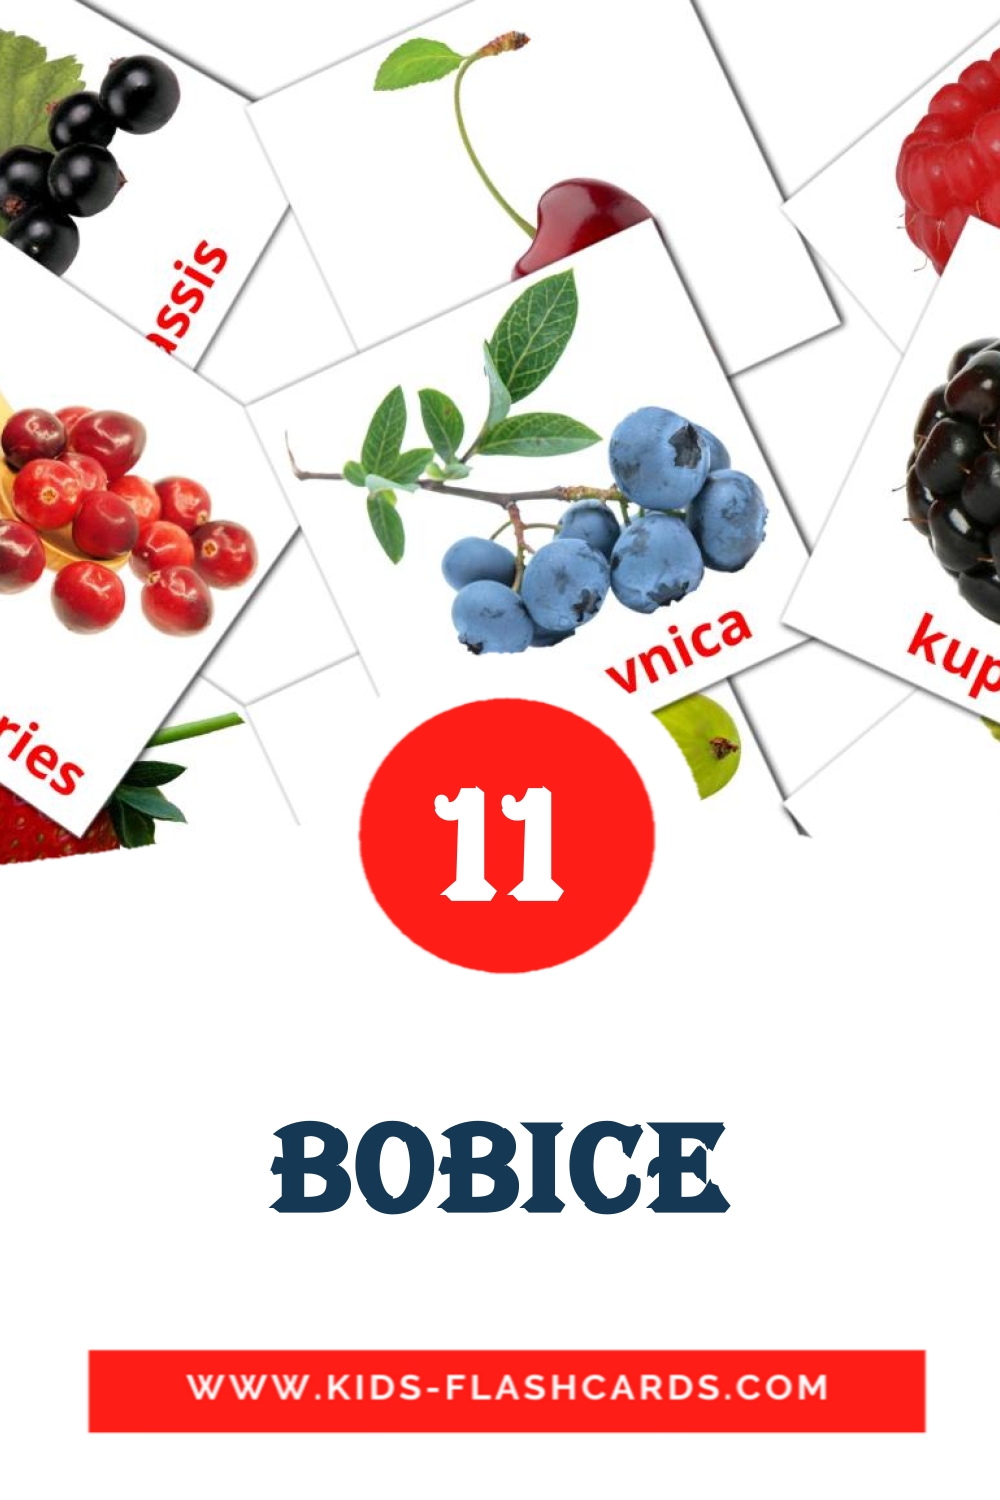 11 tarjetas didacticas de Bobice para el jardín de infancia en bosnio